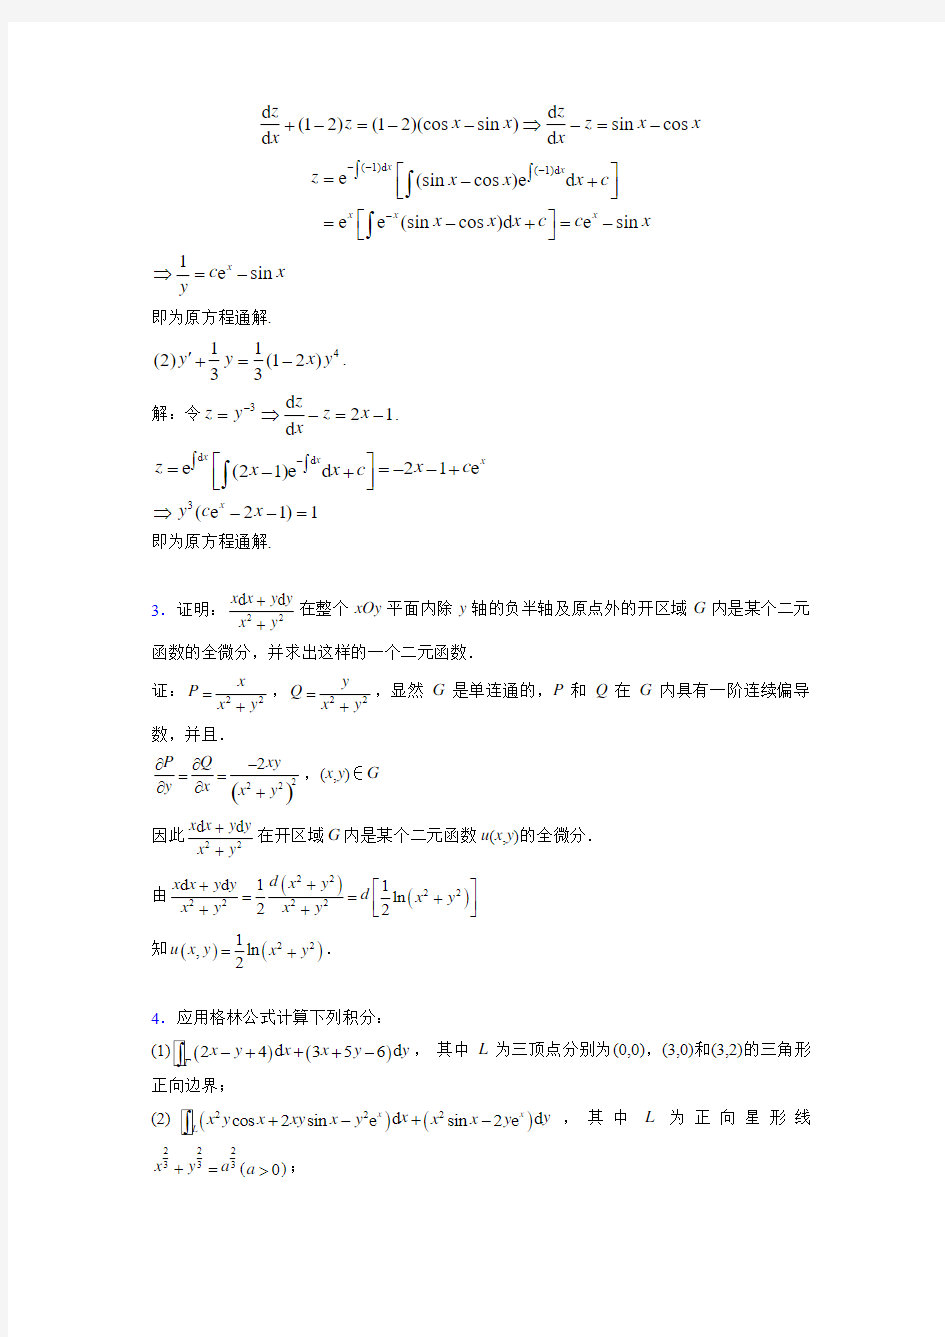 2019最新高等数学(下册)期末考试试题(含答案)YM